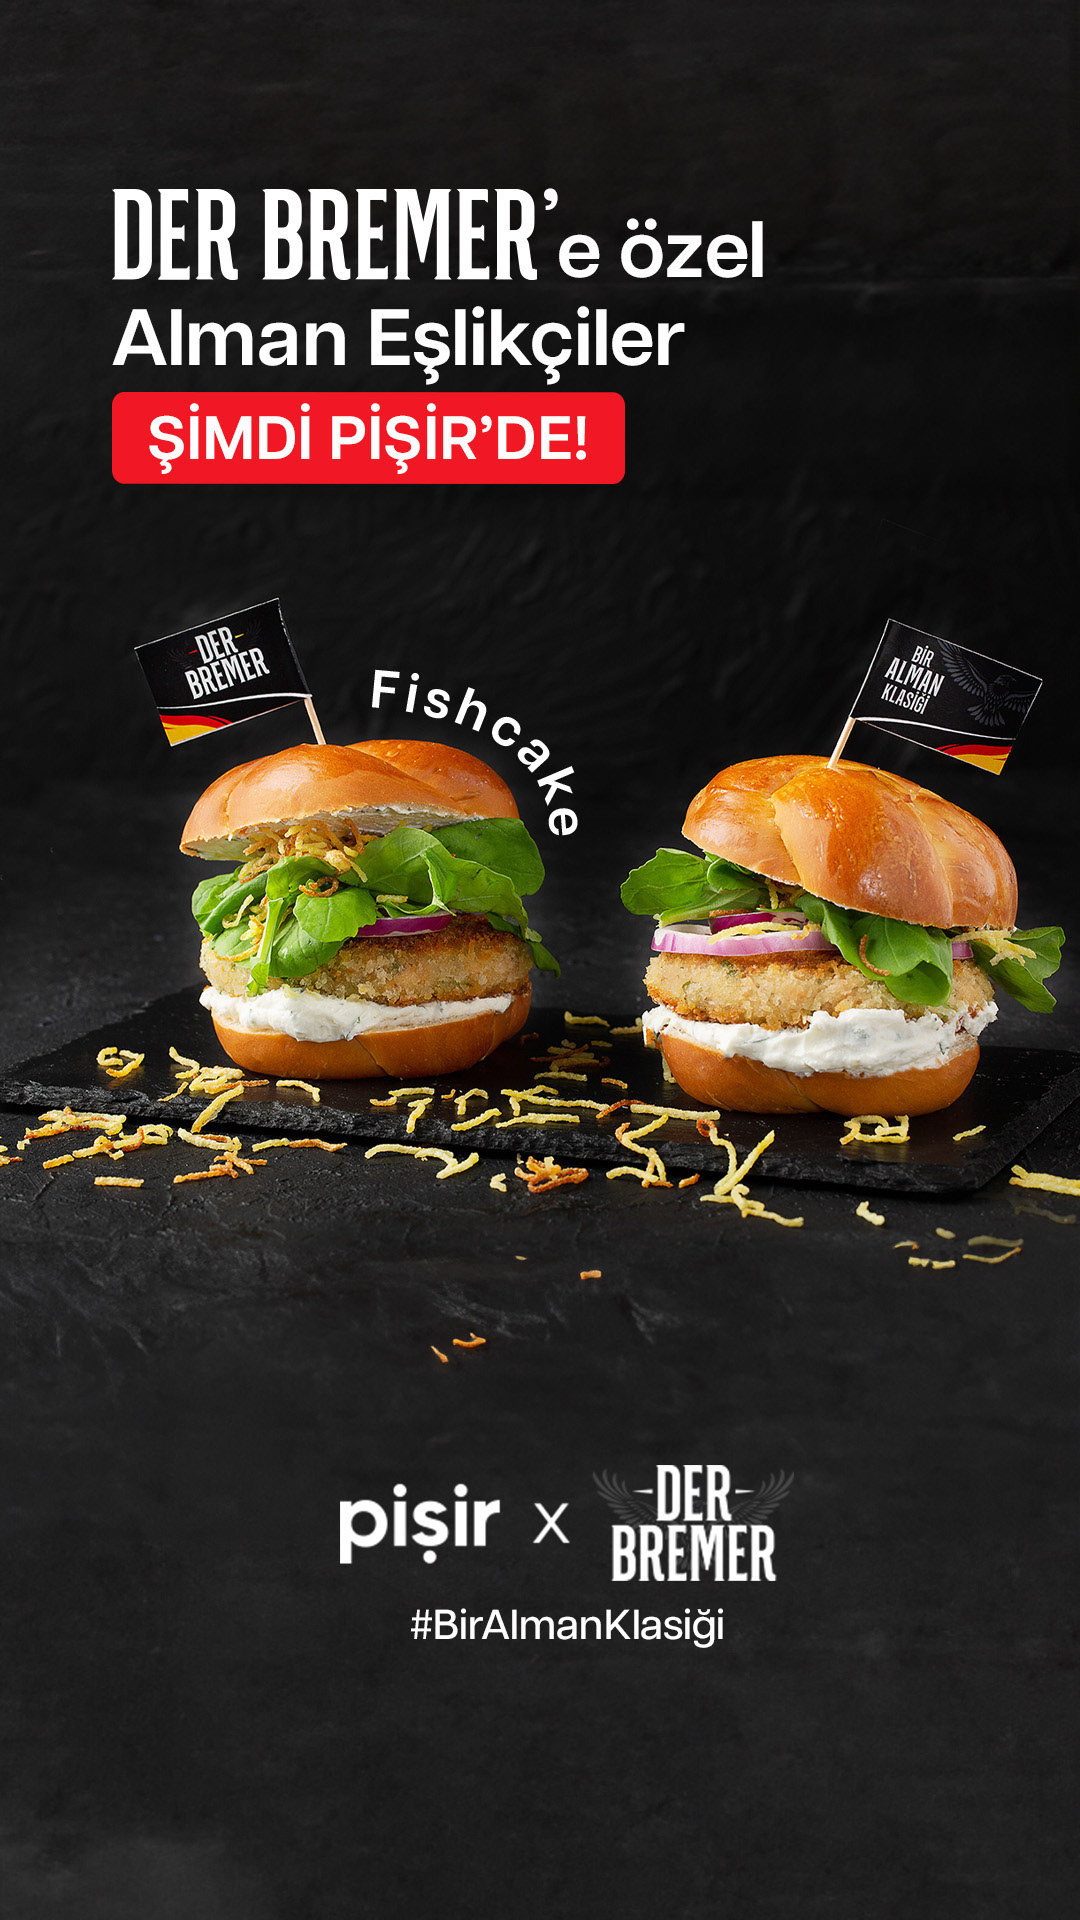 Food  Fast food hamburger Social media post Advertising  Socialmedia marketing   banner brand identity design